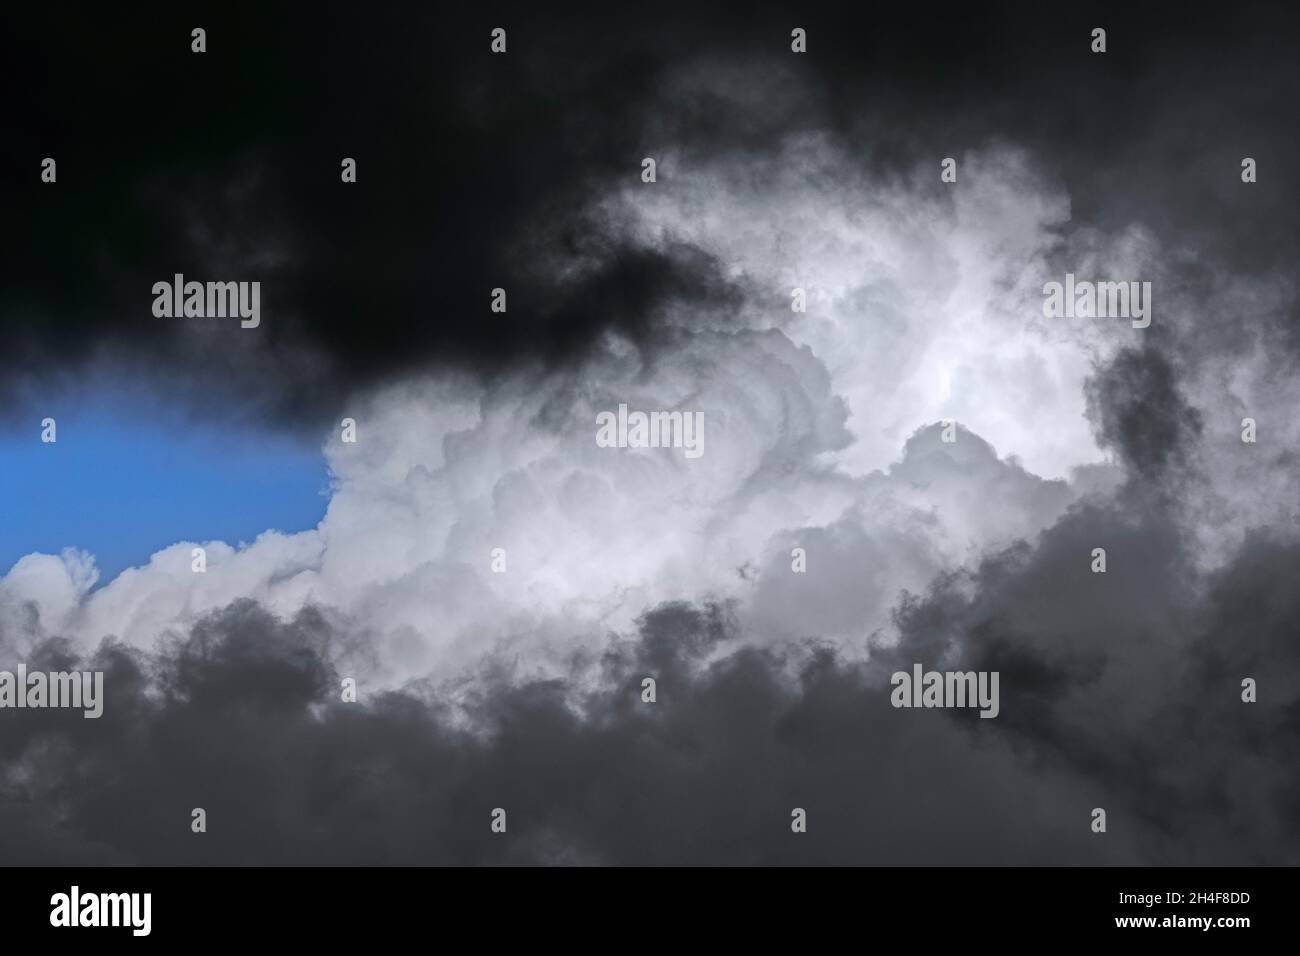 Dunkle bedrohliche Sturmwolken und Kumulus congestus Wolke / hoch aufragenden Kumulus entwickeln sich am Himmel Stockfoto